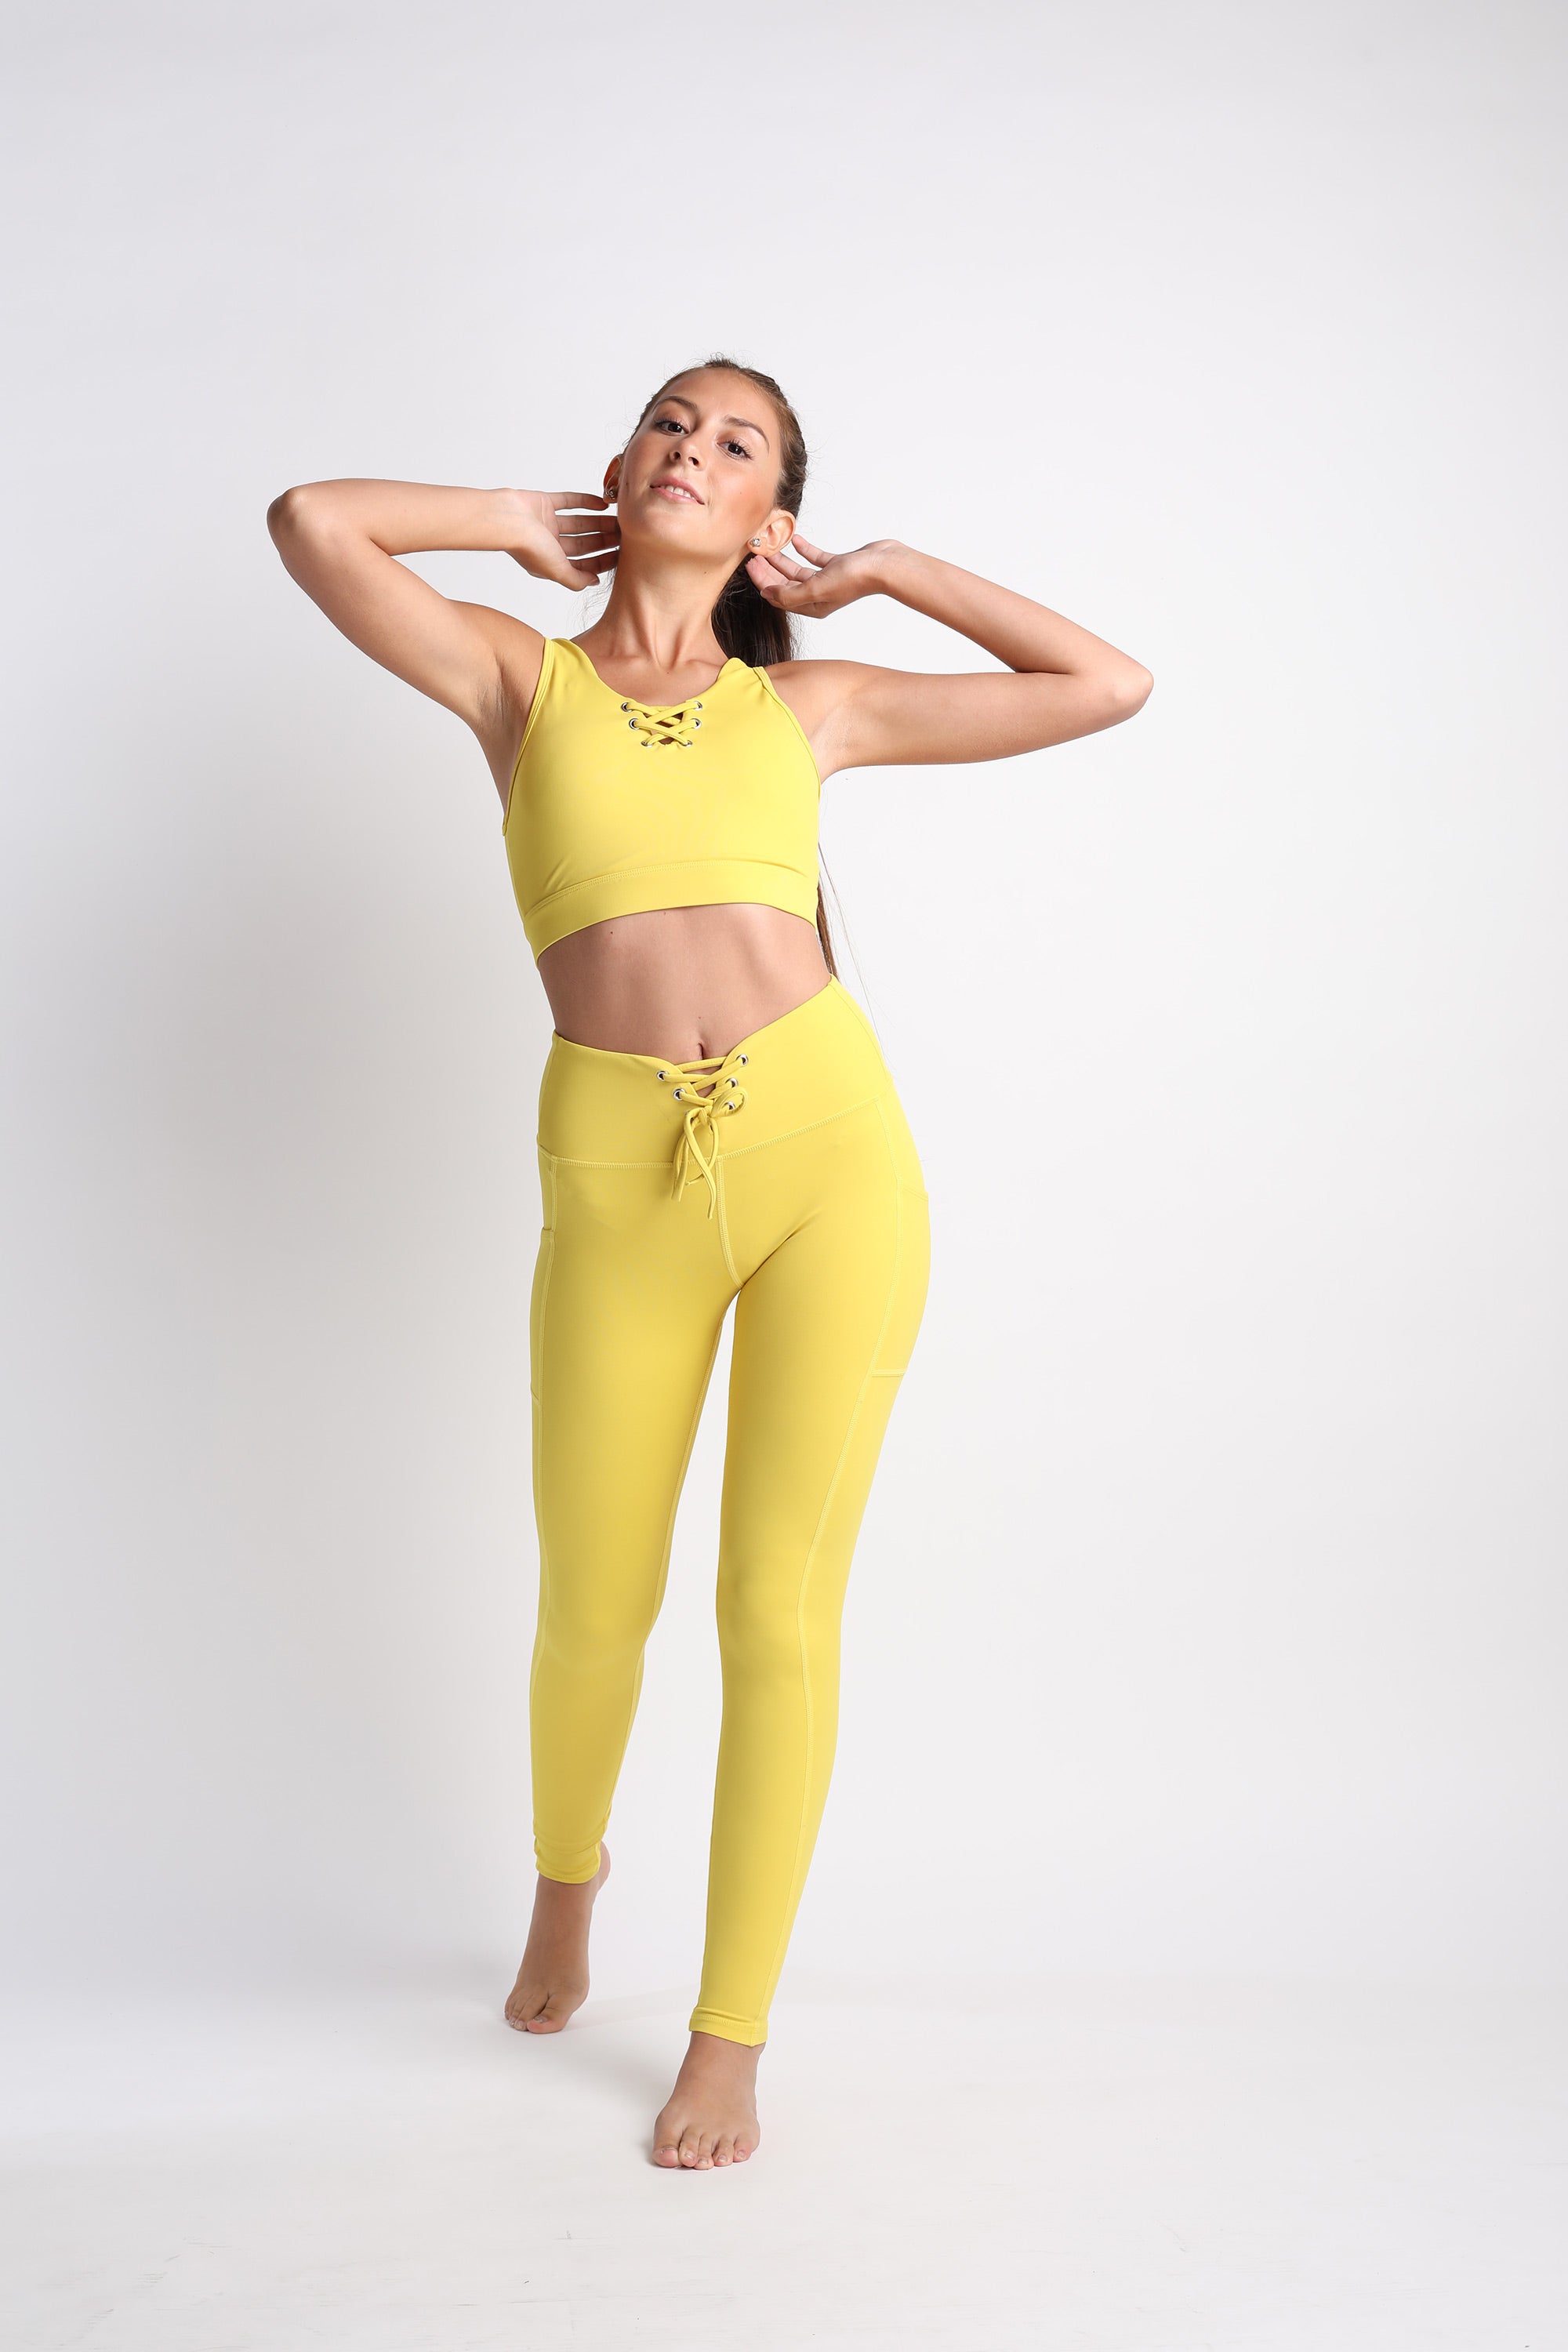 Mini Hello Girlfriend Flexi Pants (Yellow) – Flexi Lexi Fitness